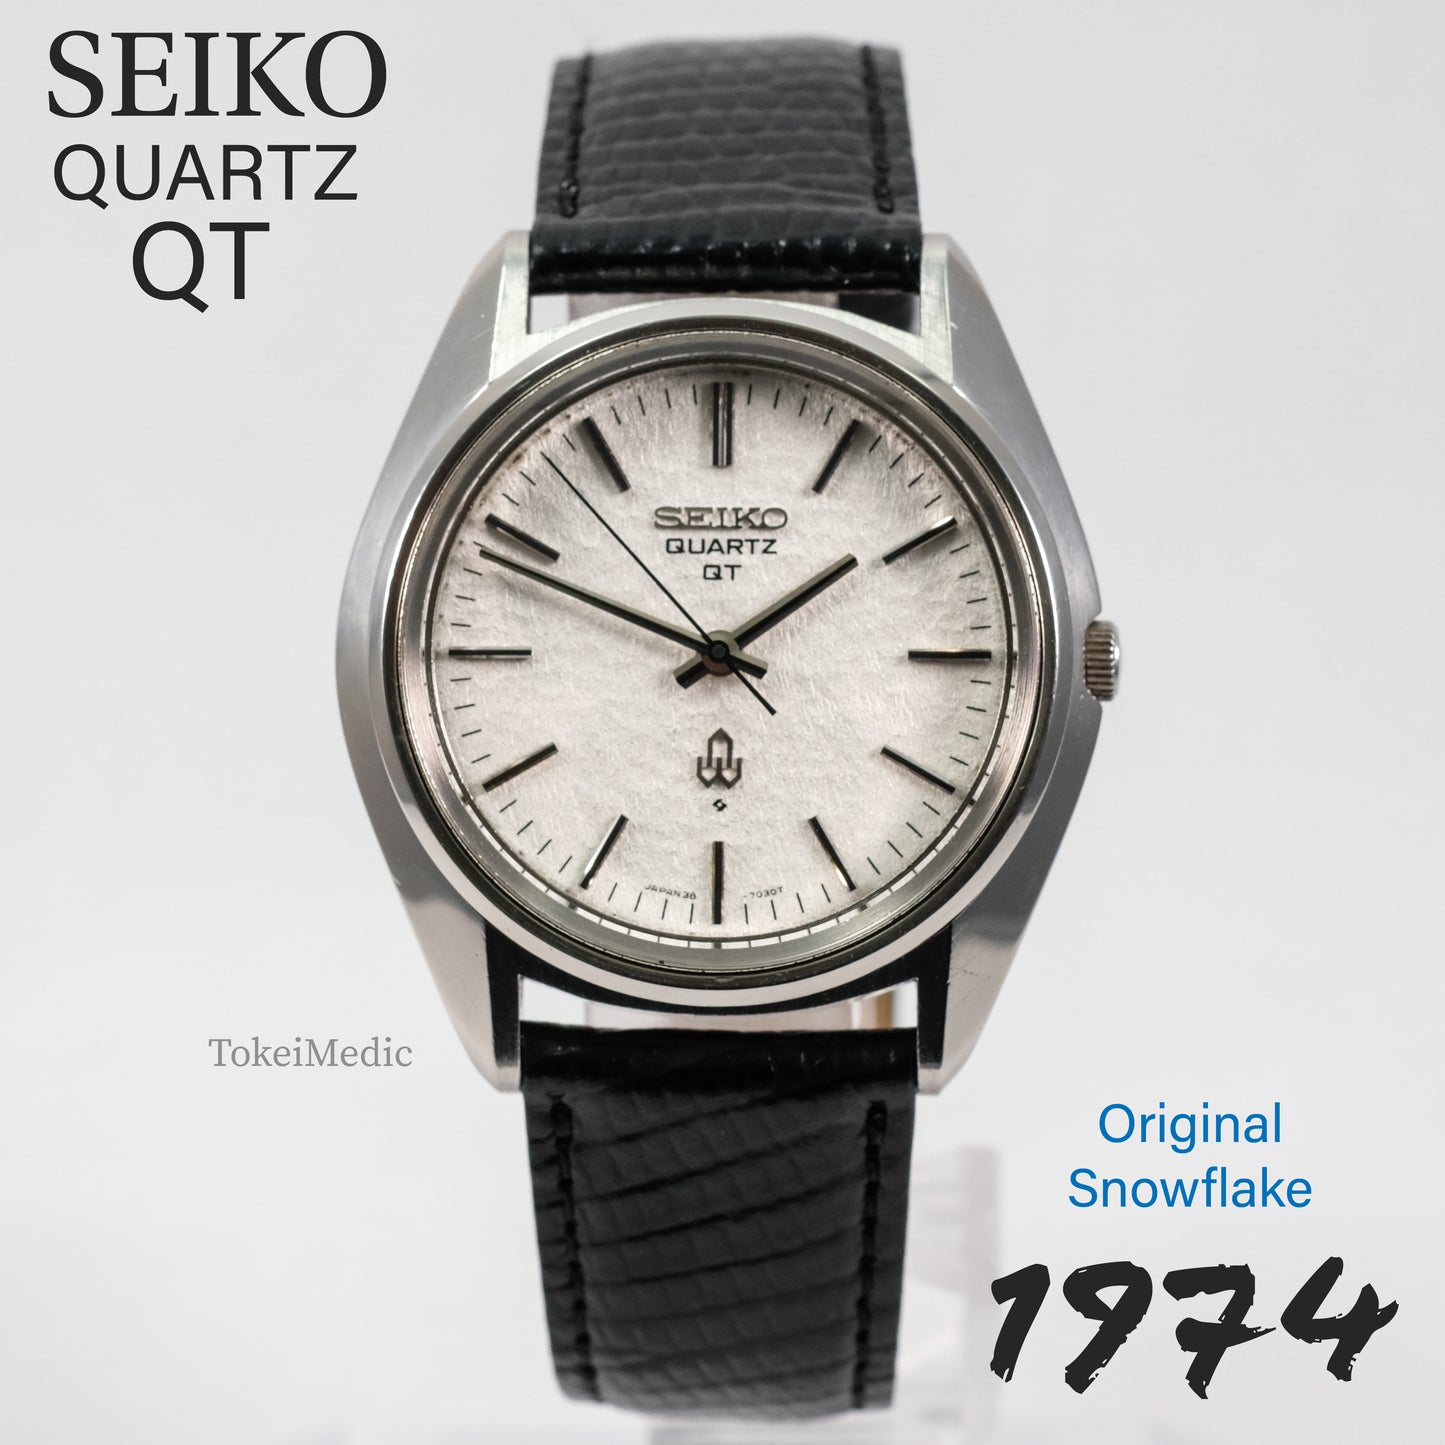 1974 Seiko Quartz QT 38-7030